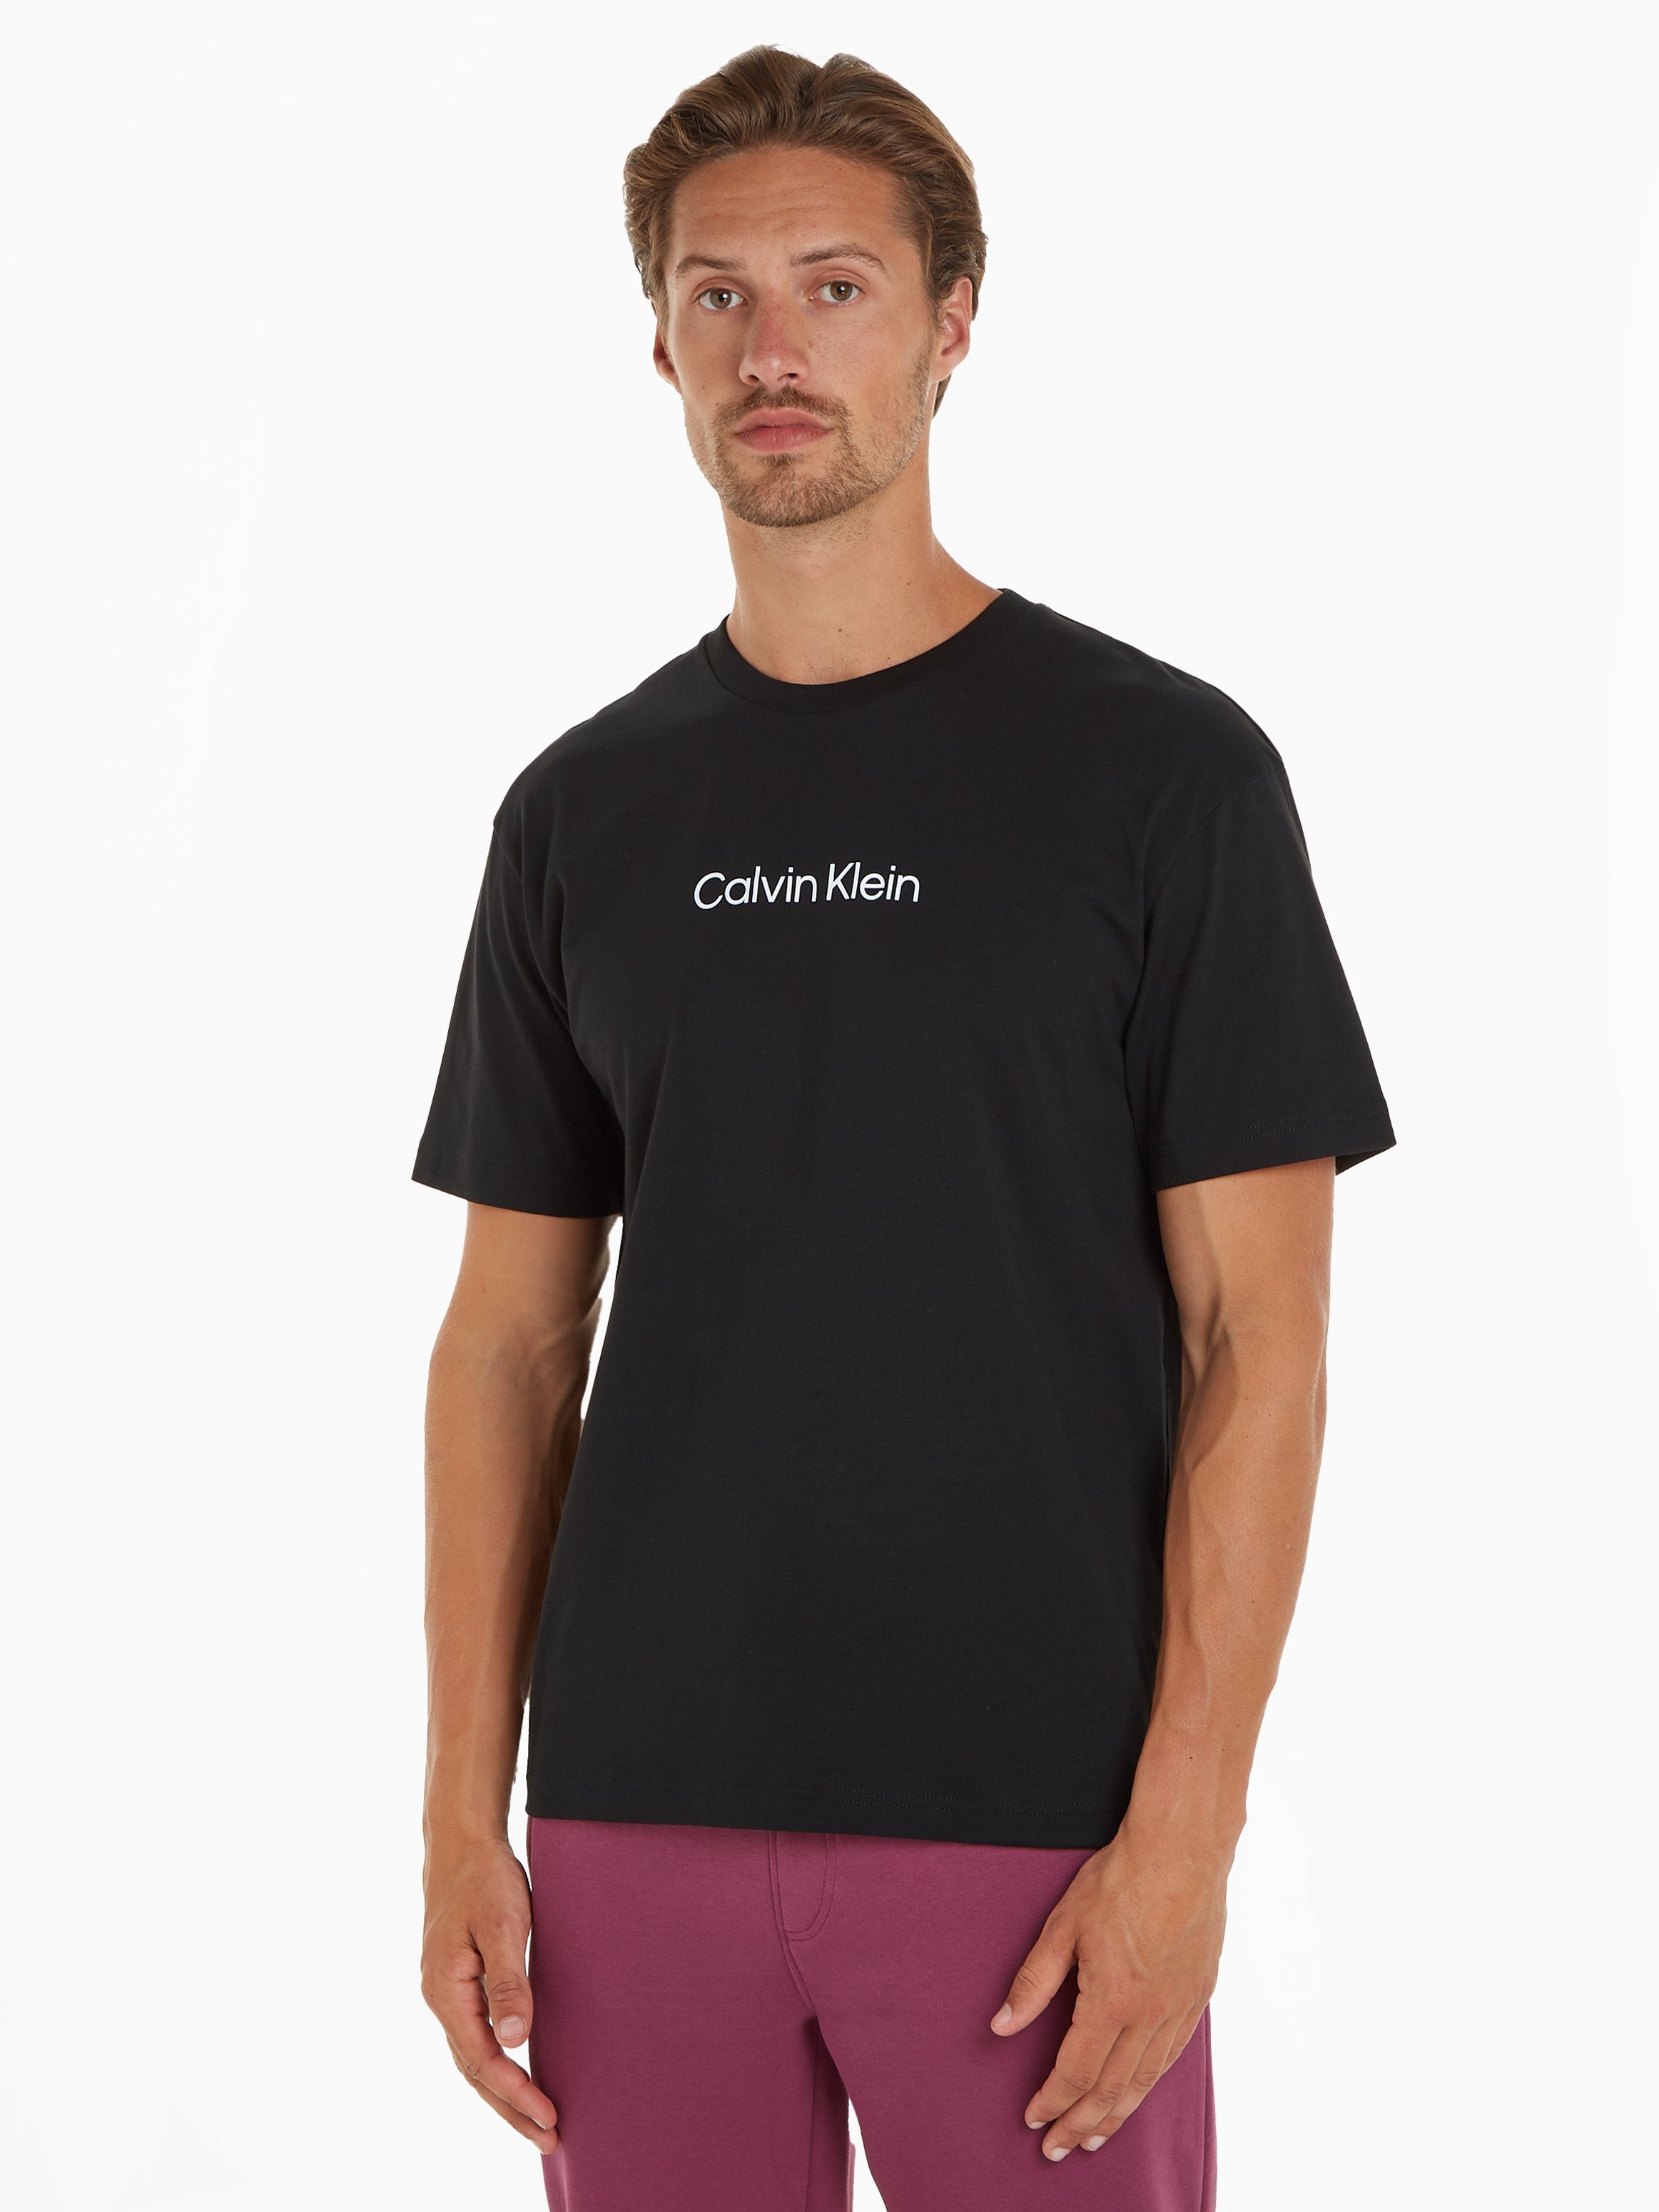 Calvin Klein T-Shirt HERO LOGO COMFORT T-SHIRT mit aufgedrucktem Markenlabel schwarz